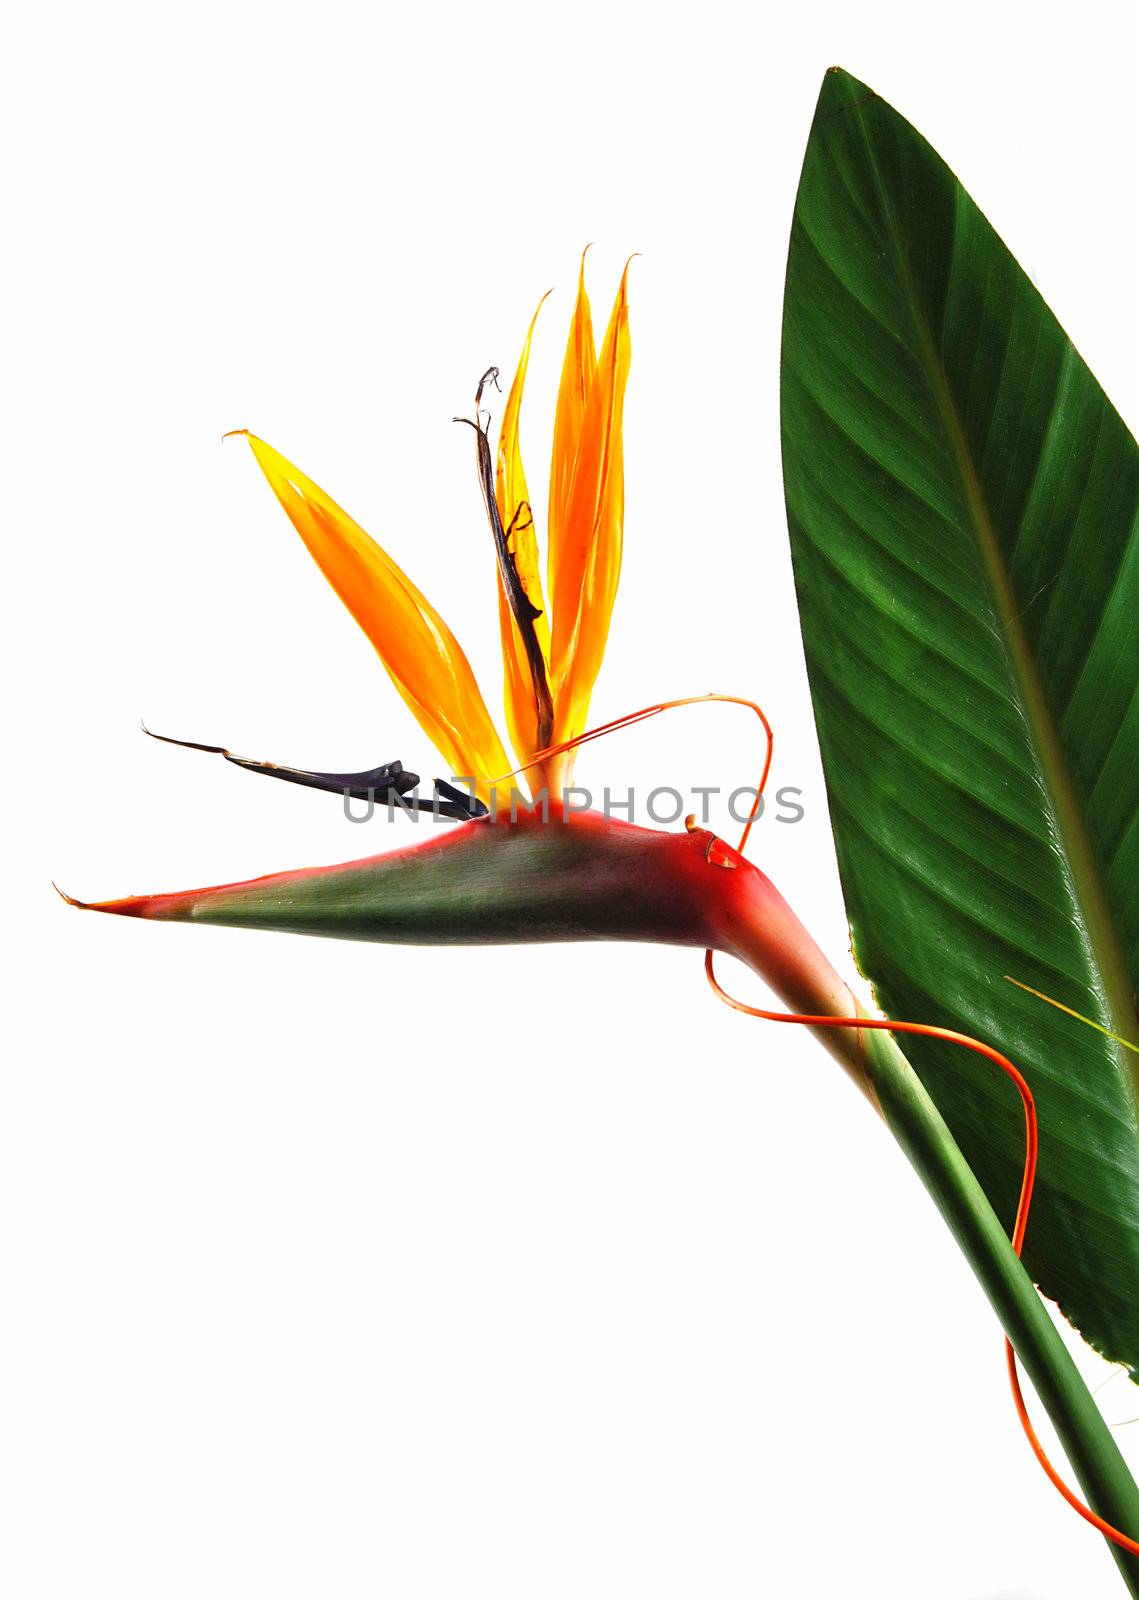 Bird of paradise flower (strelitzia) isolated on white background